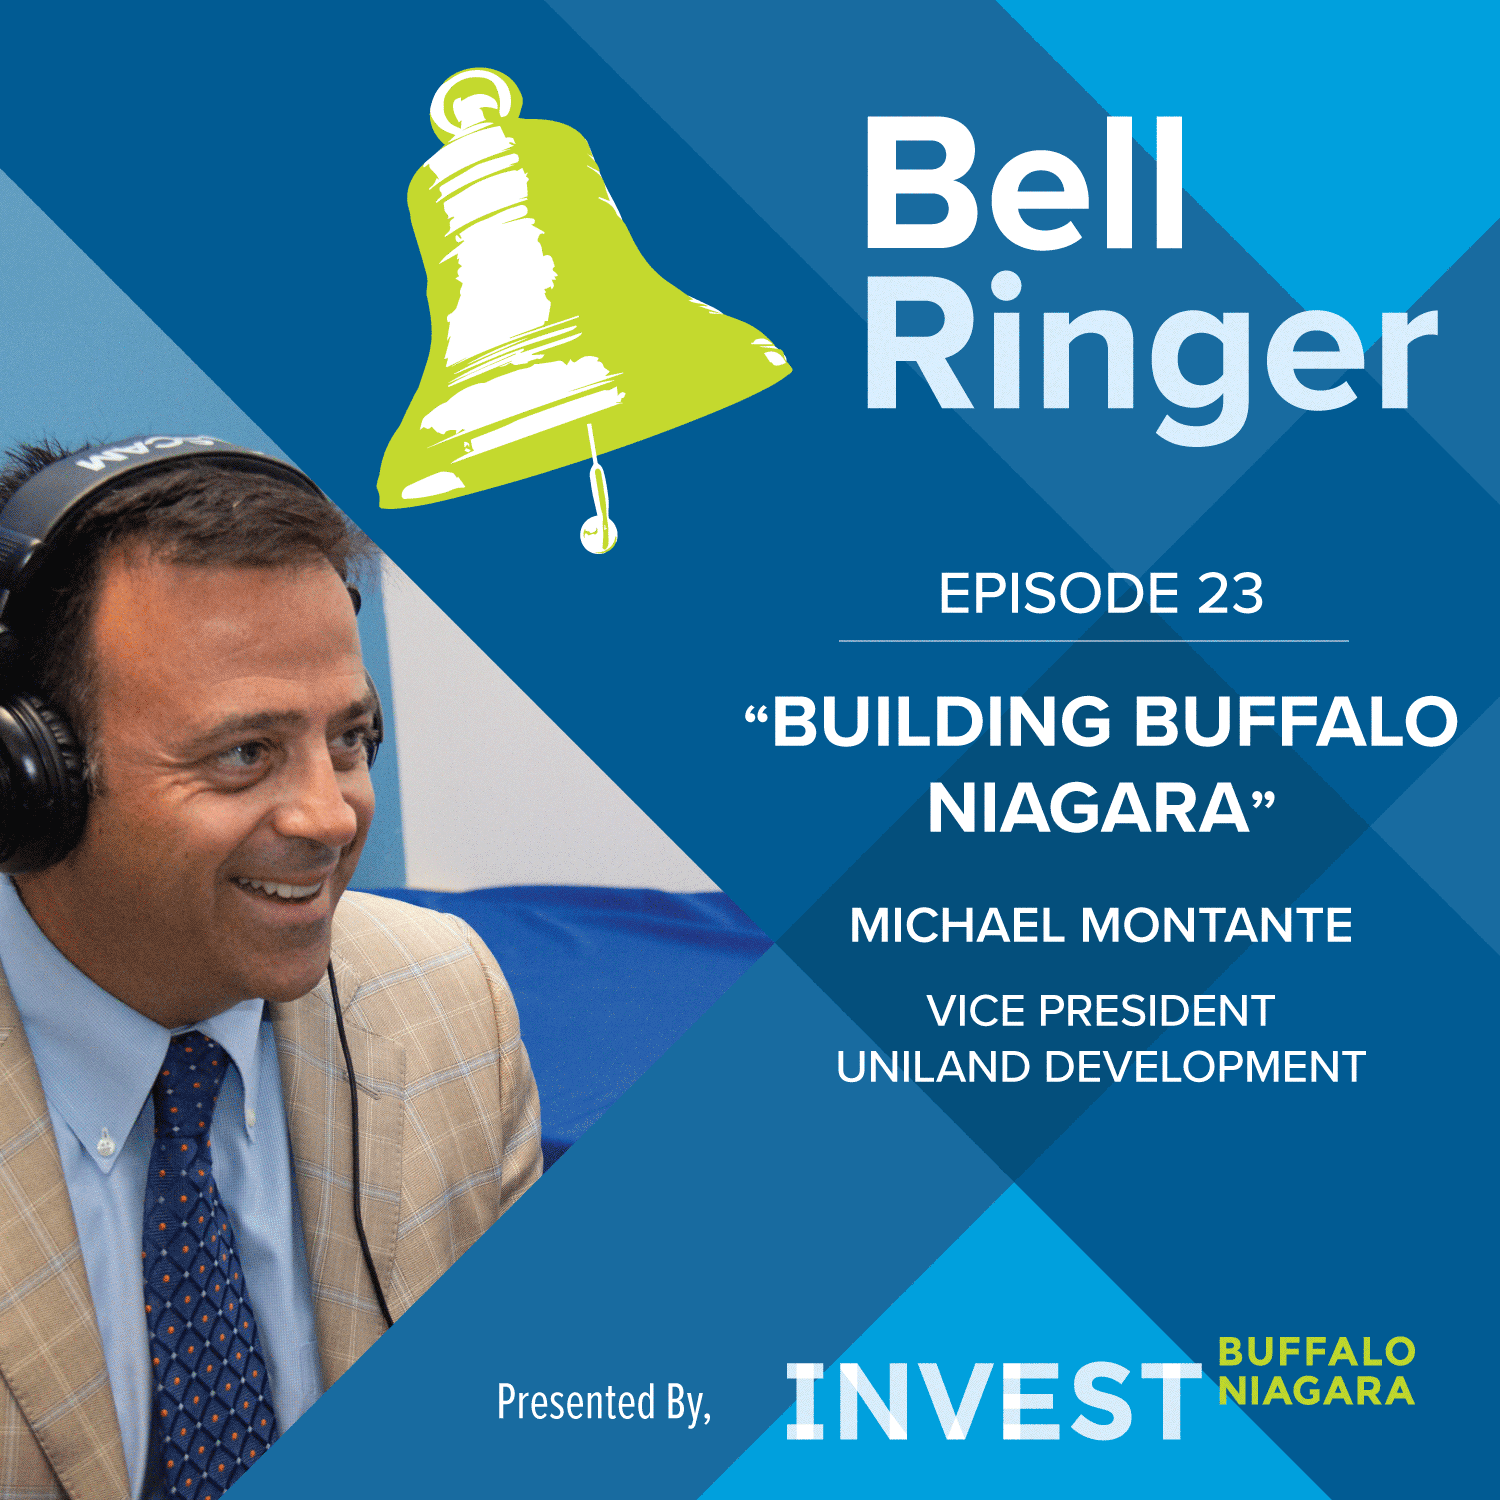 Building Buffalo Niagara